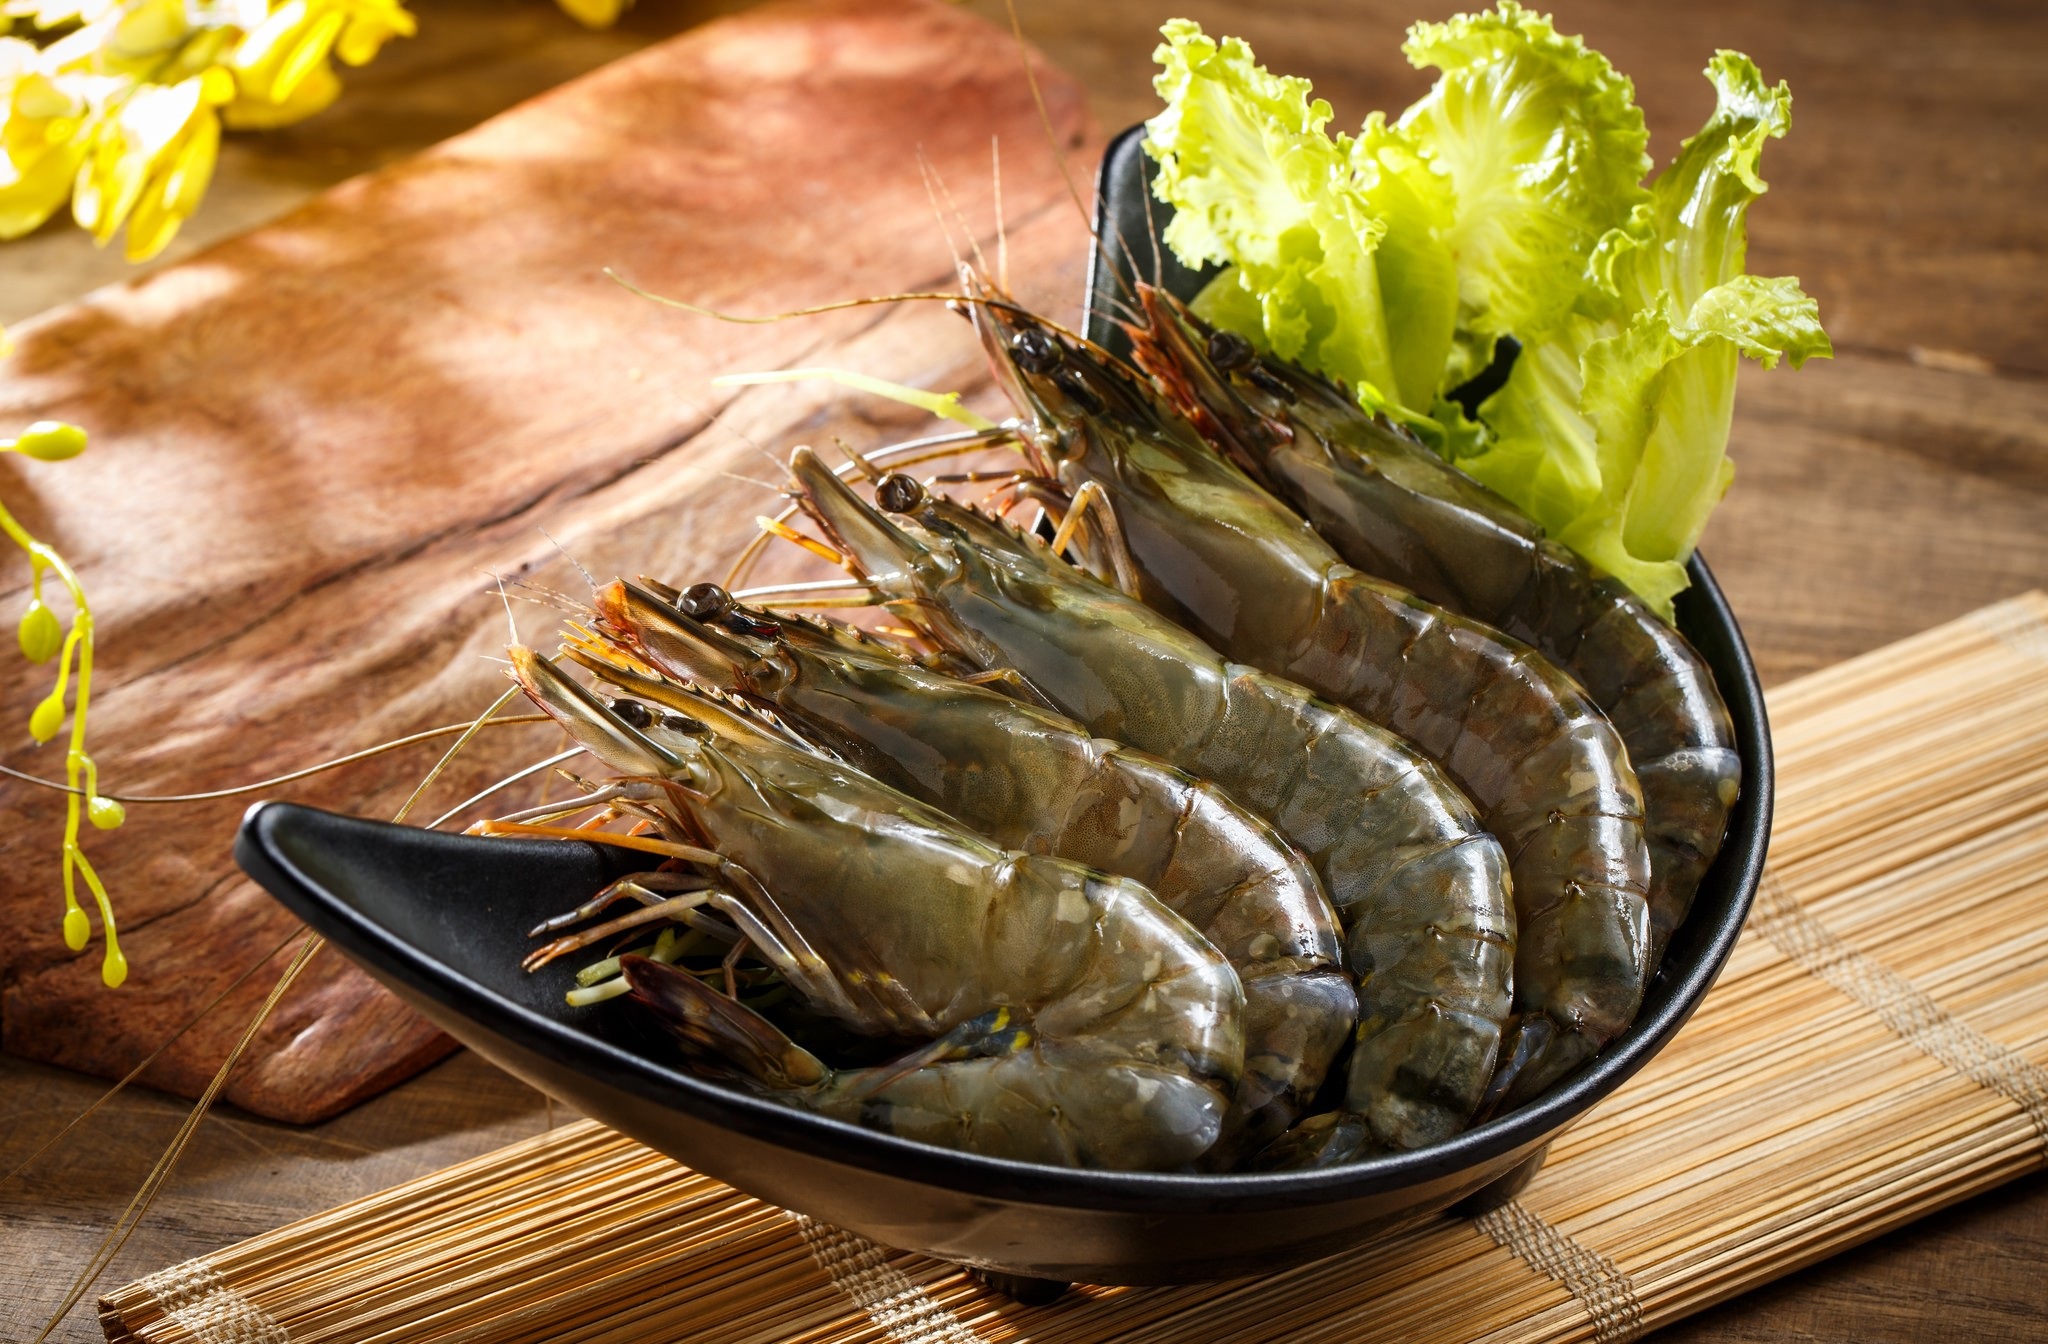 Download mobile wallpaper Food, Shrimp for free.